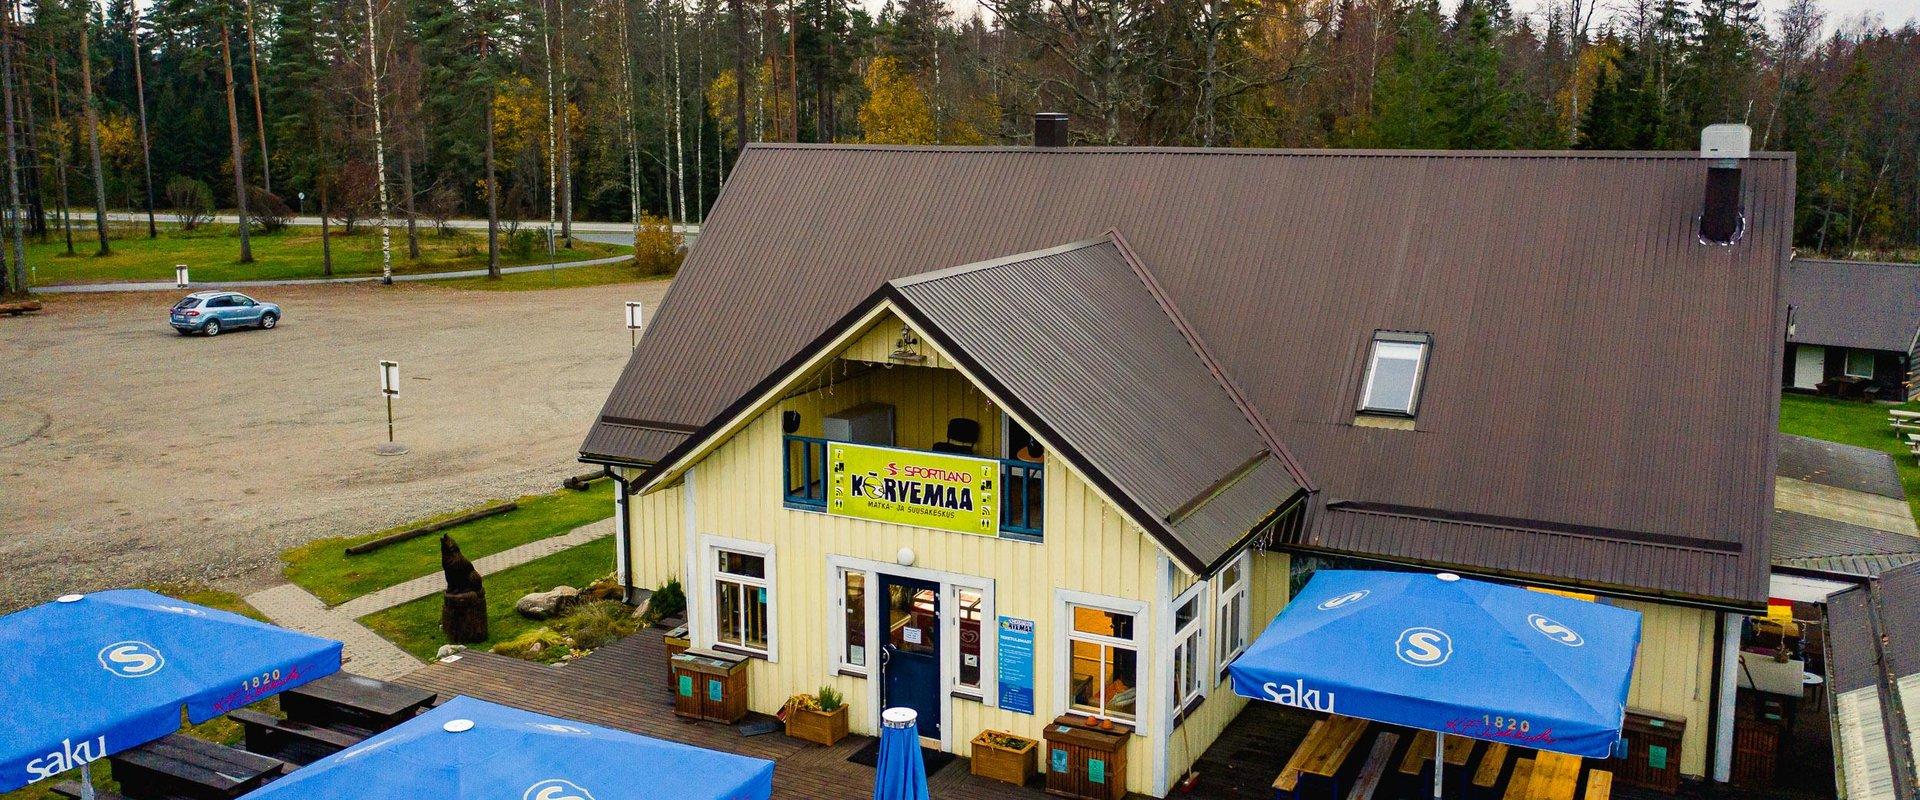 Sportland Kõrvemaa Matka- ja Suusakeskuse kohvik